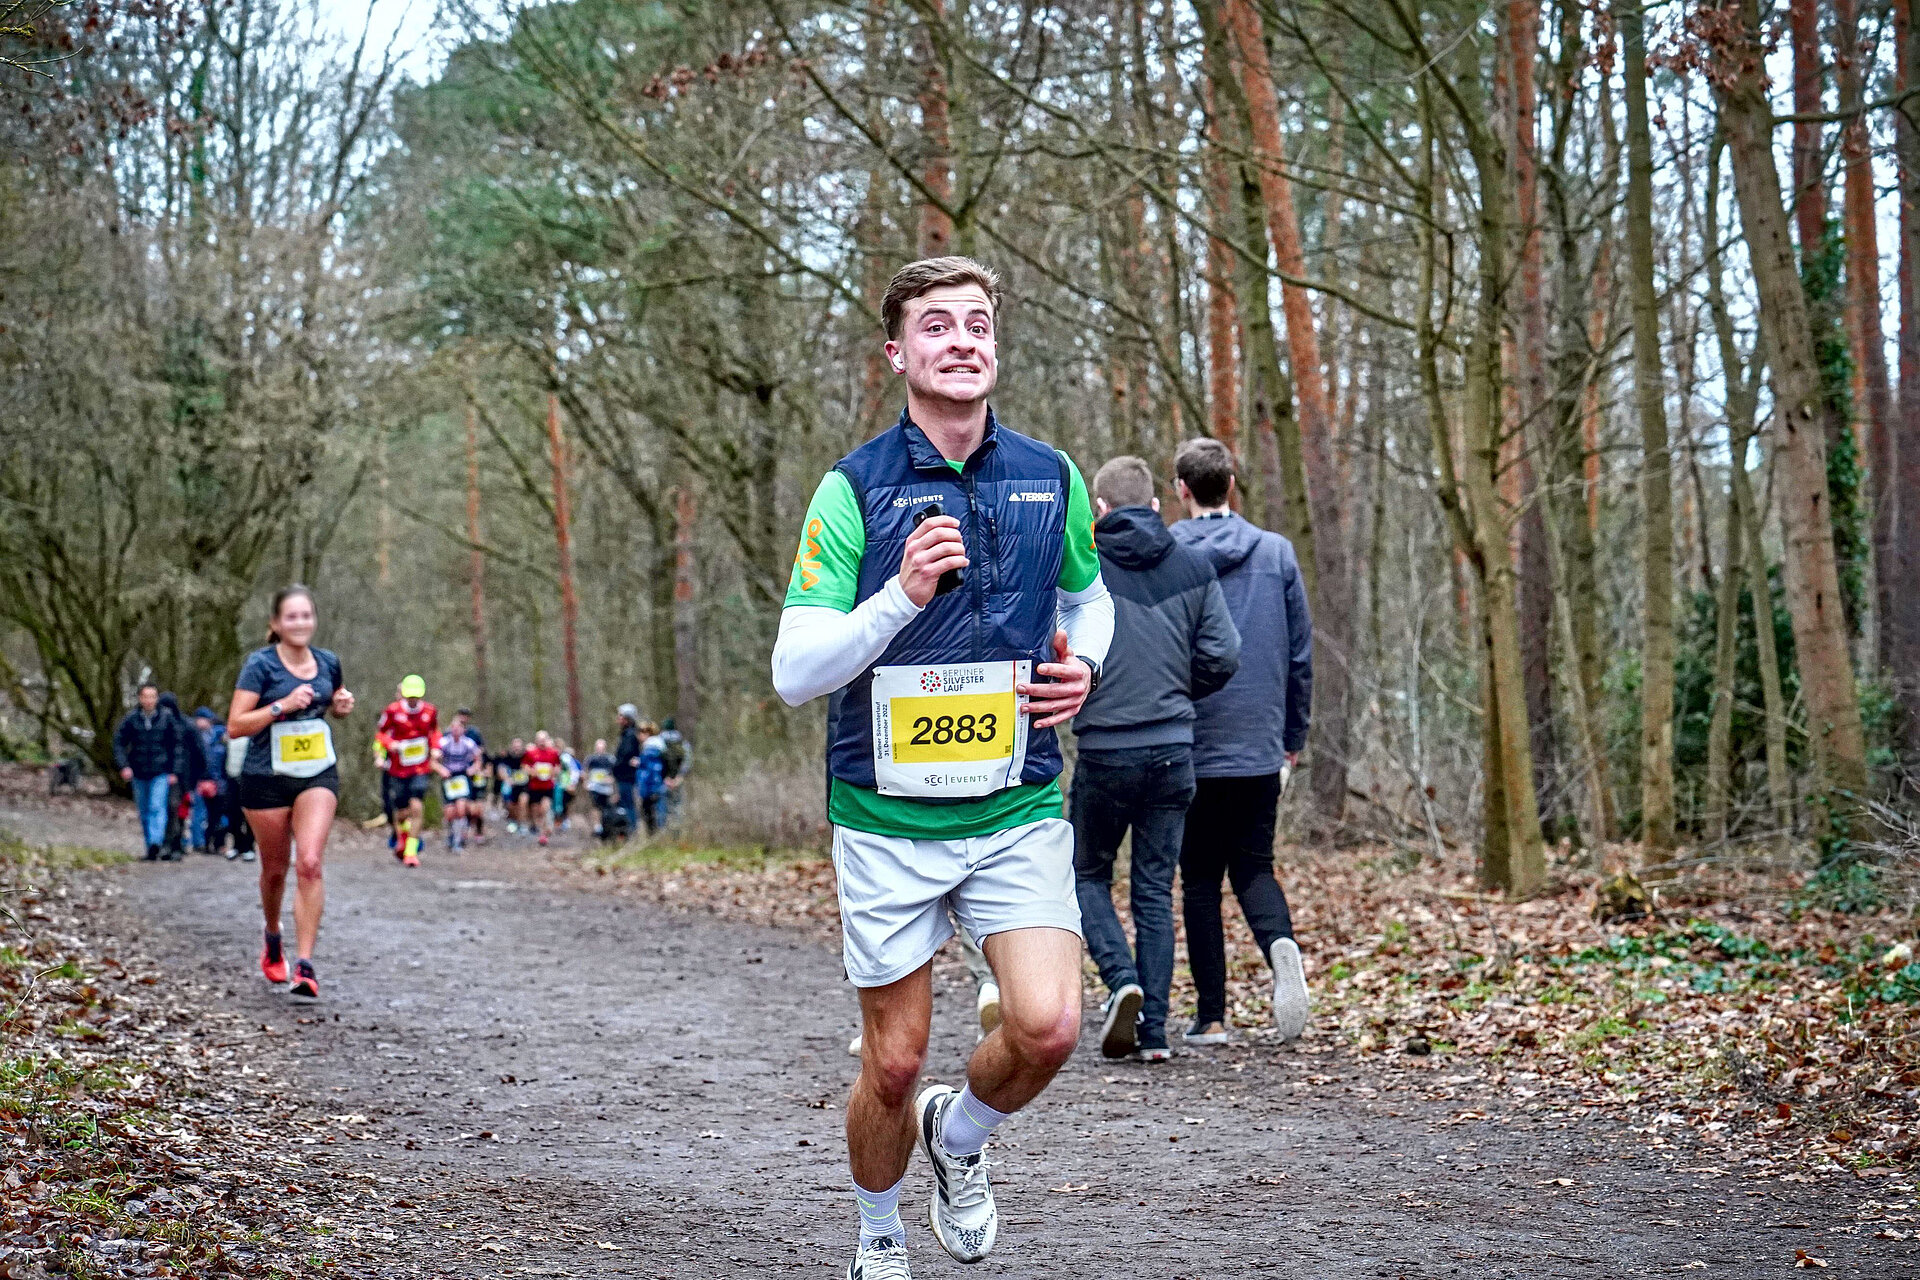 Berliner Silvesterlauf: Männlicher Läufer hat sich auf der Strecke im Wald von einer Gruppe abgesetzt @ SCC EVENTS / Sportografen